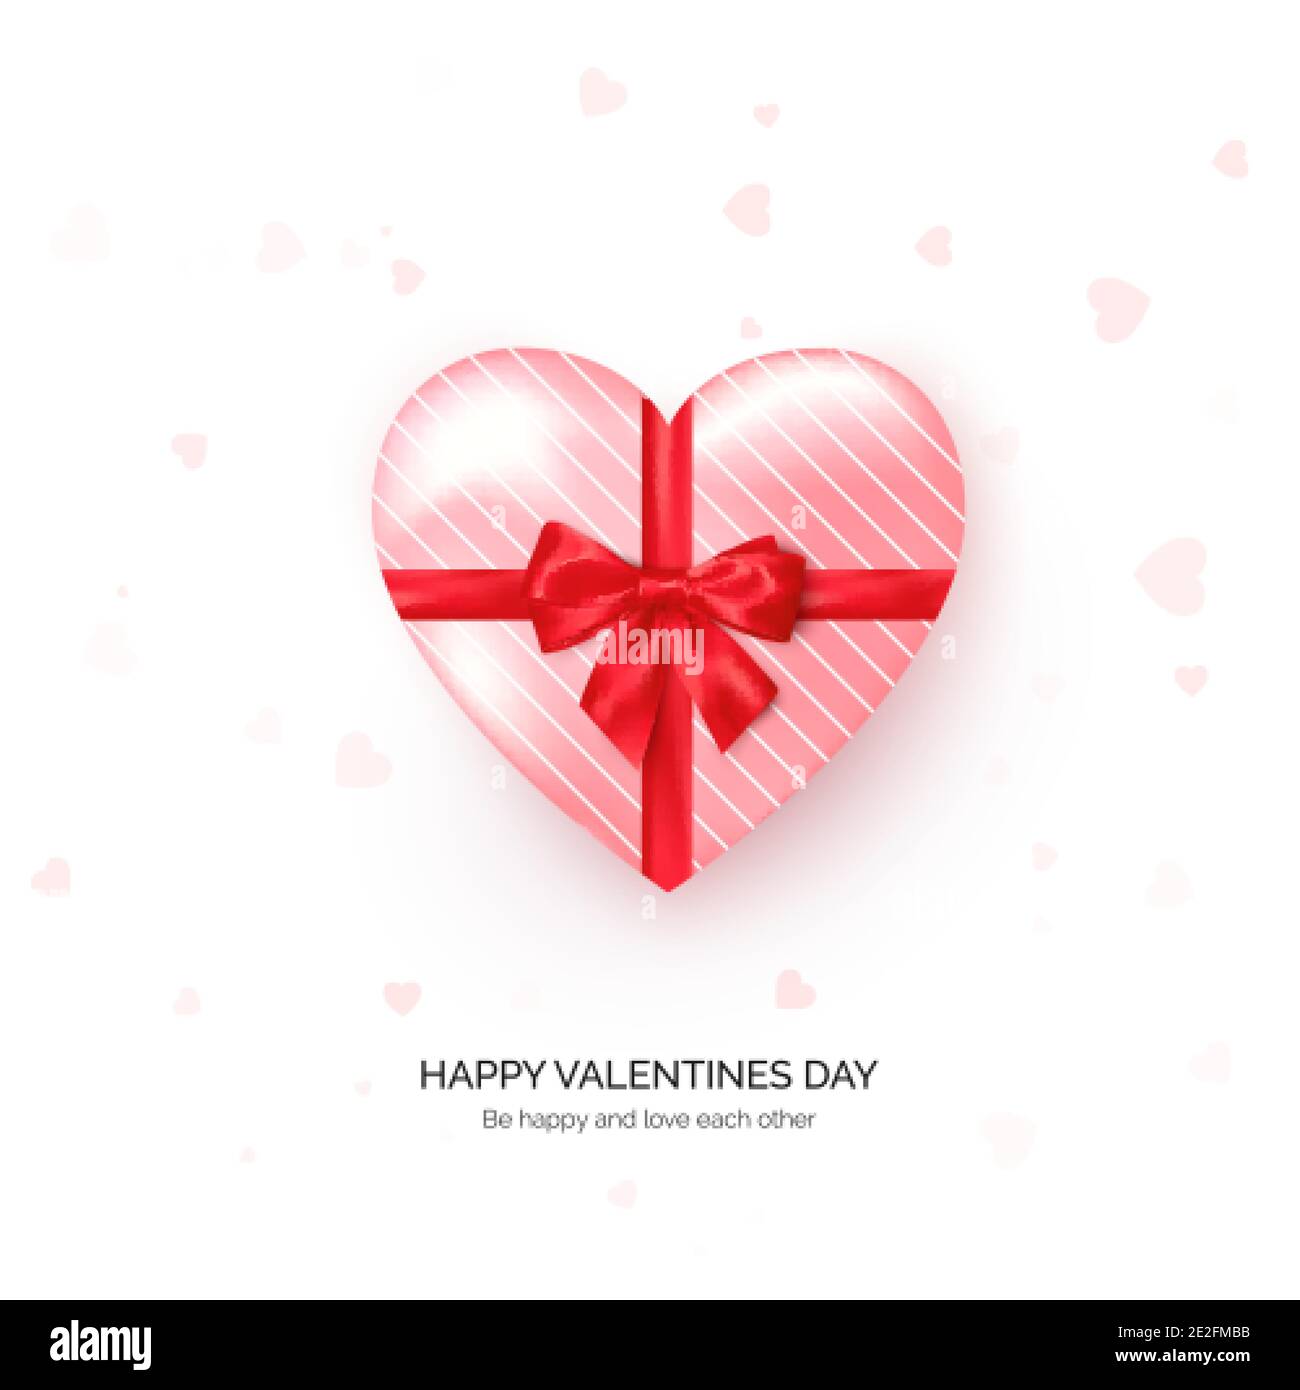 Herzförmige Geschenkbox mit roter Seidenschleife. Vorlage für Grußkarten zum Valentinstag. Vektor Stock Vektor